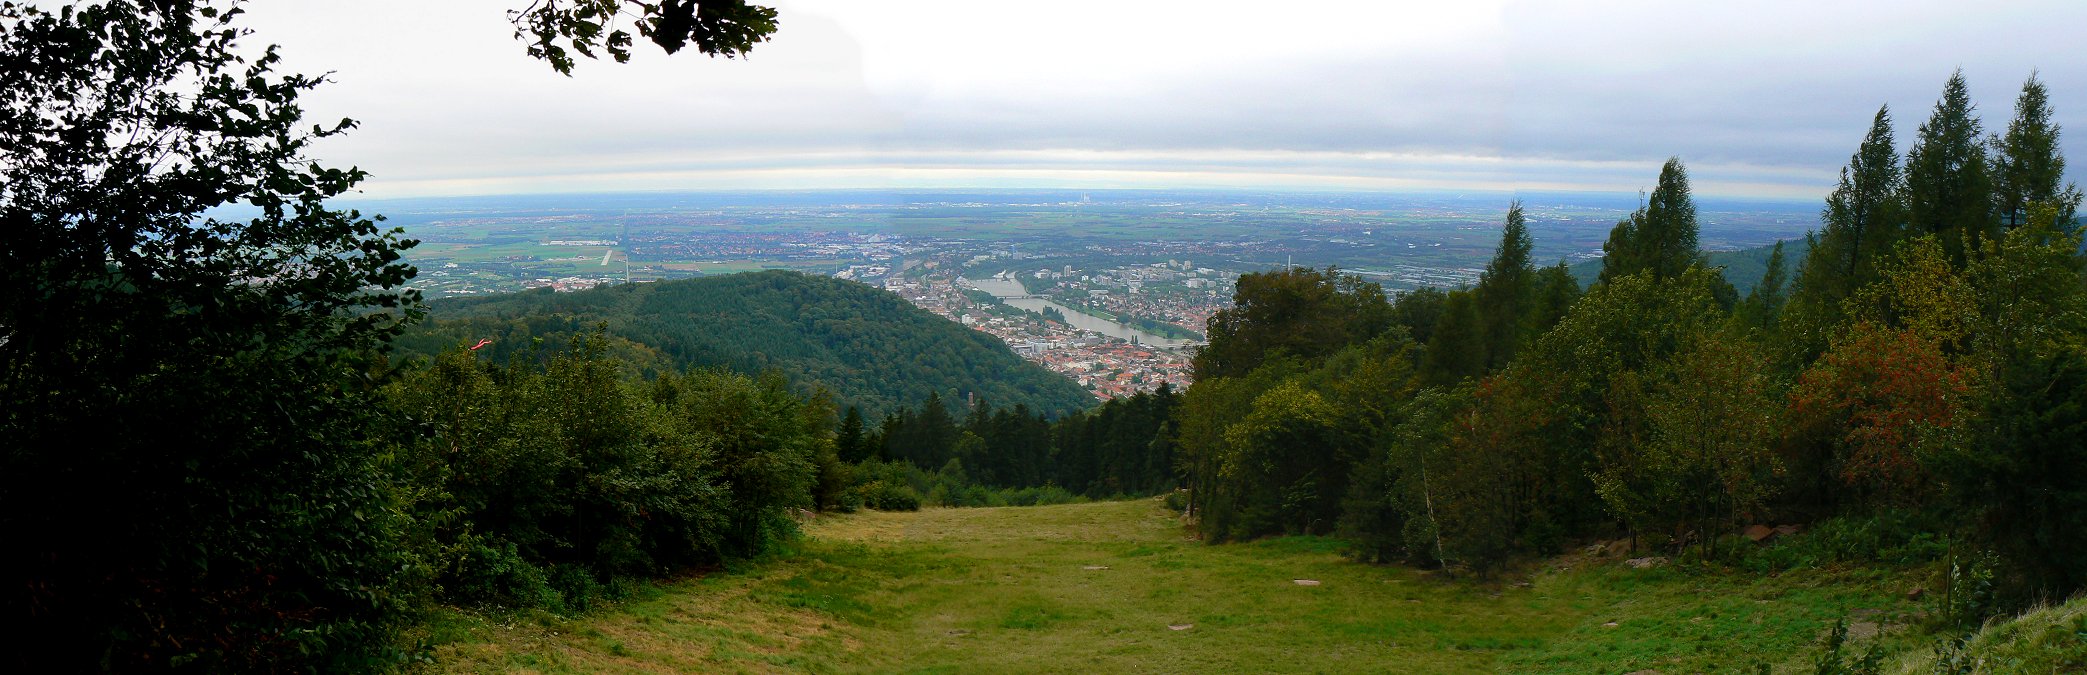 Aussicht vom Königstuhl bei Heidelberg Richtung Rheinebene